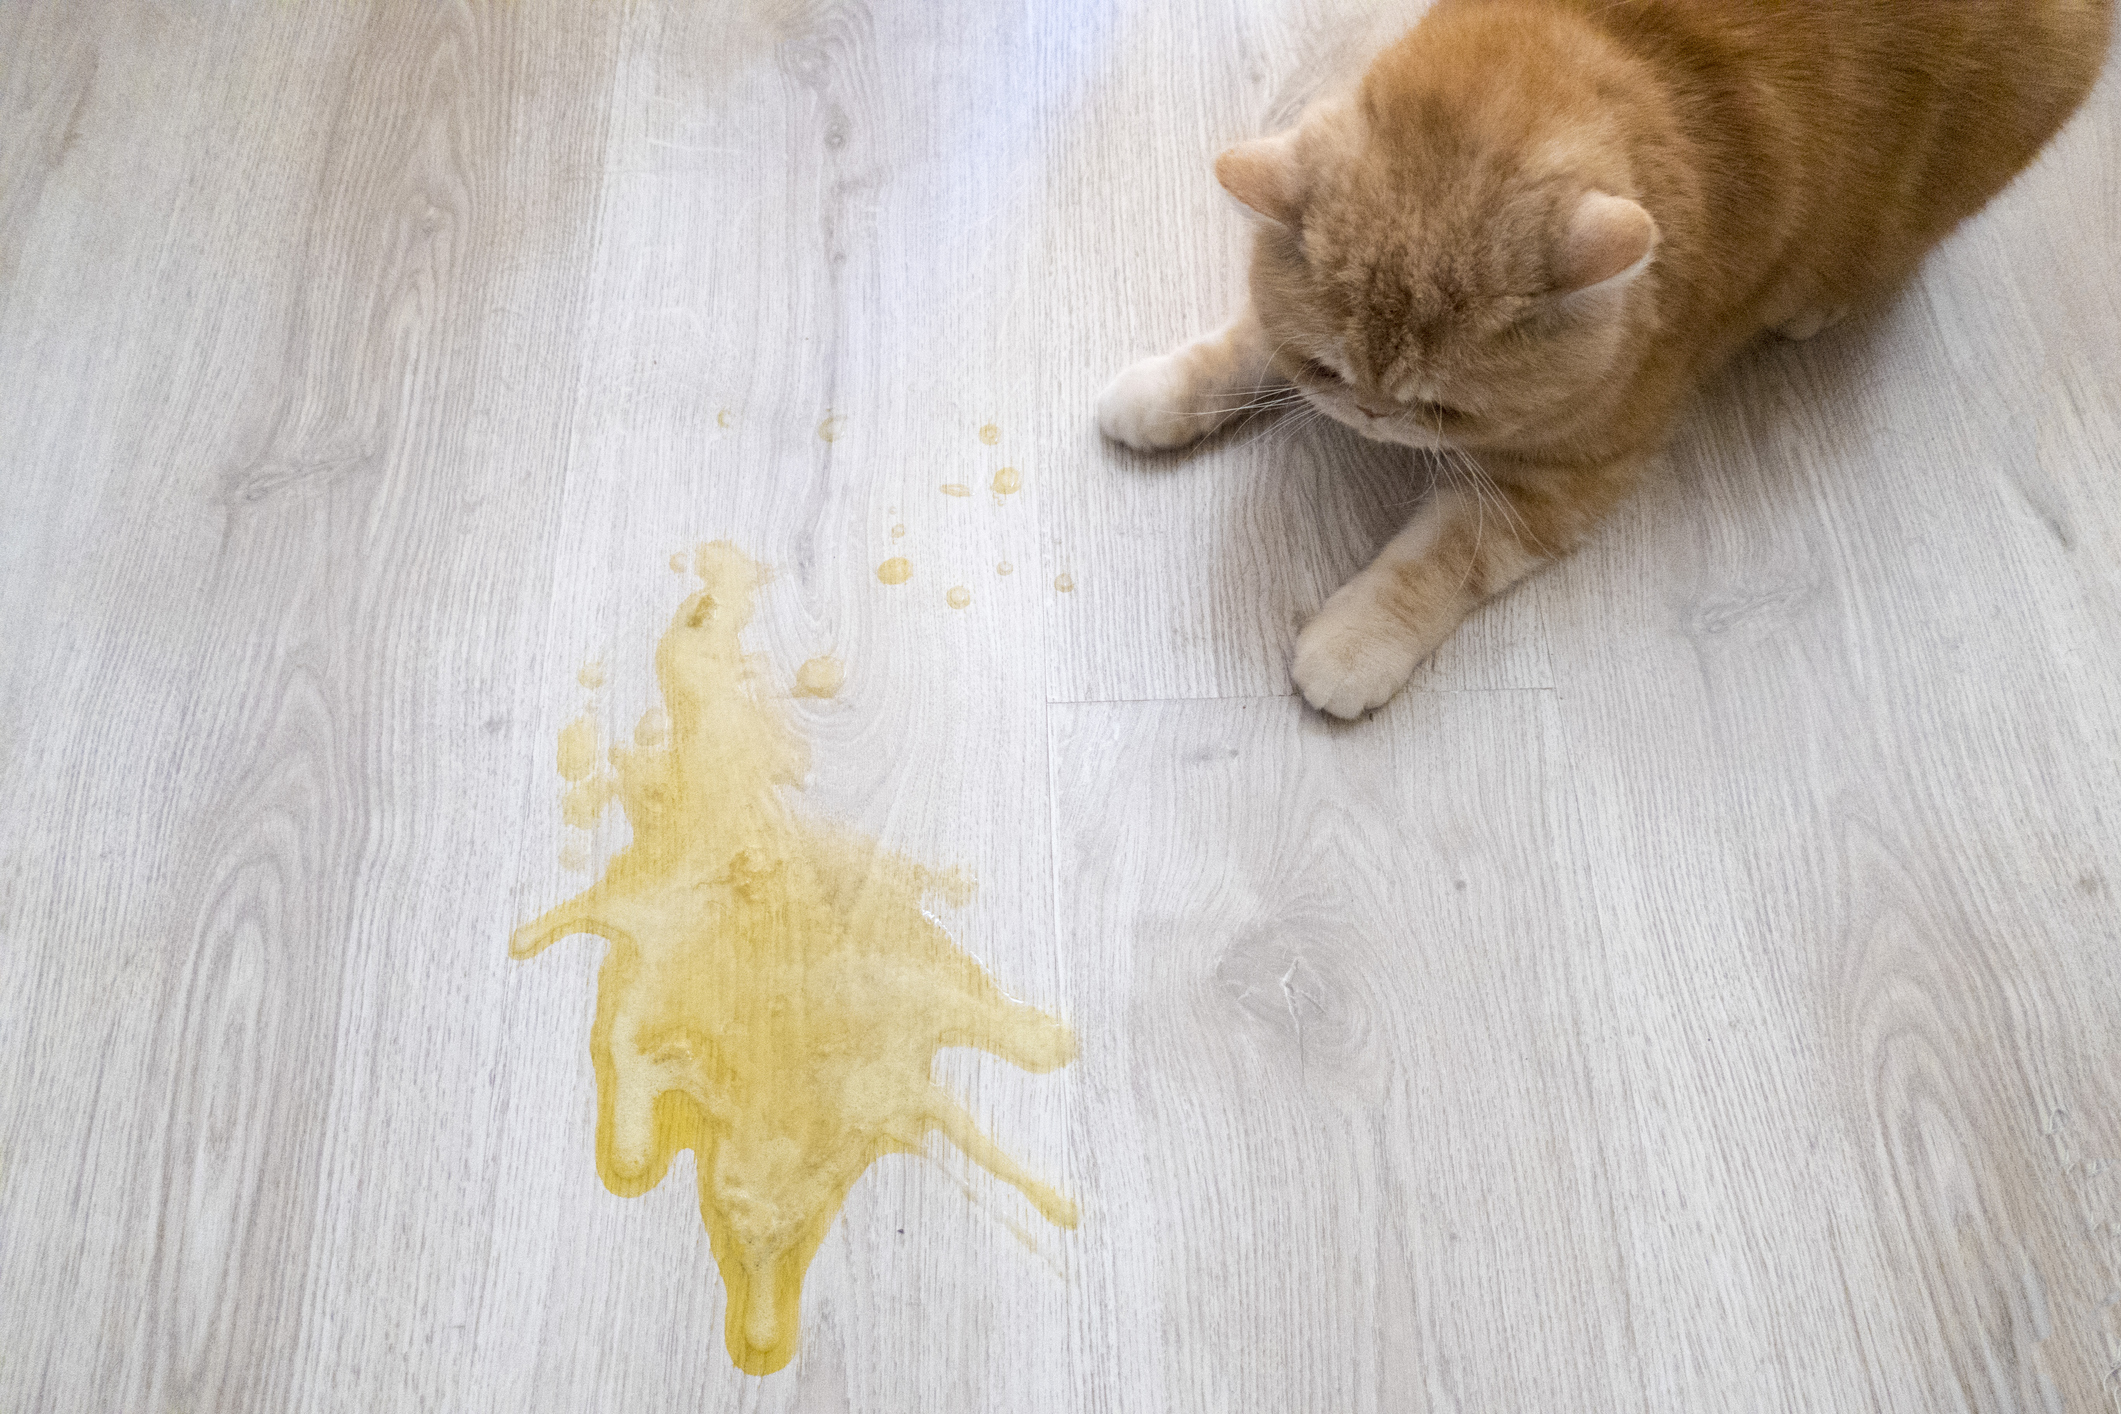 Почему кошку рвет желтой жидкостью, и как оказать первую помощь?